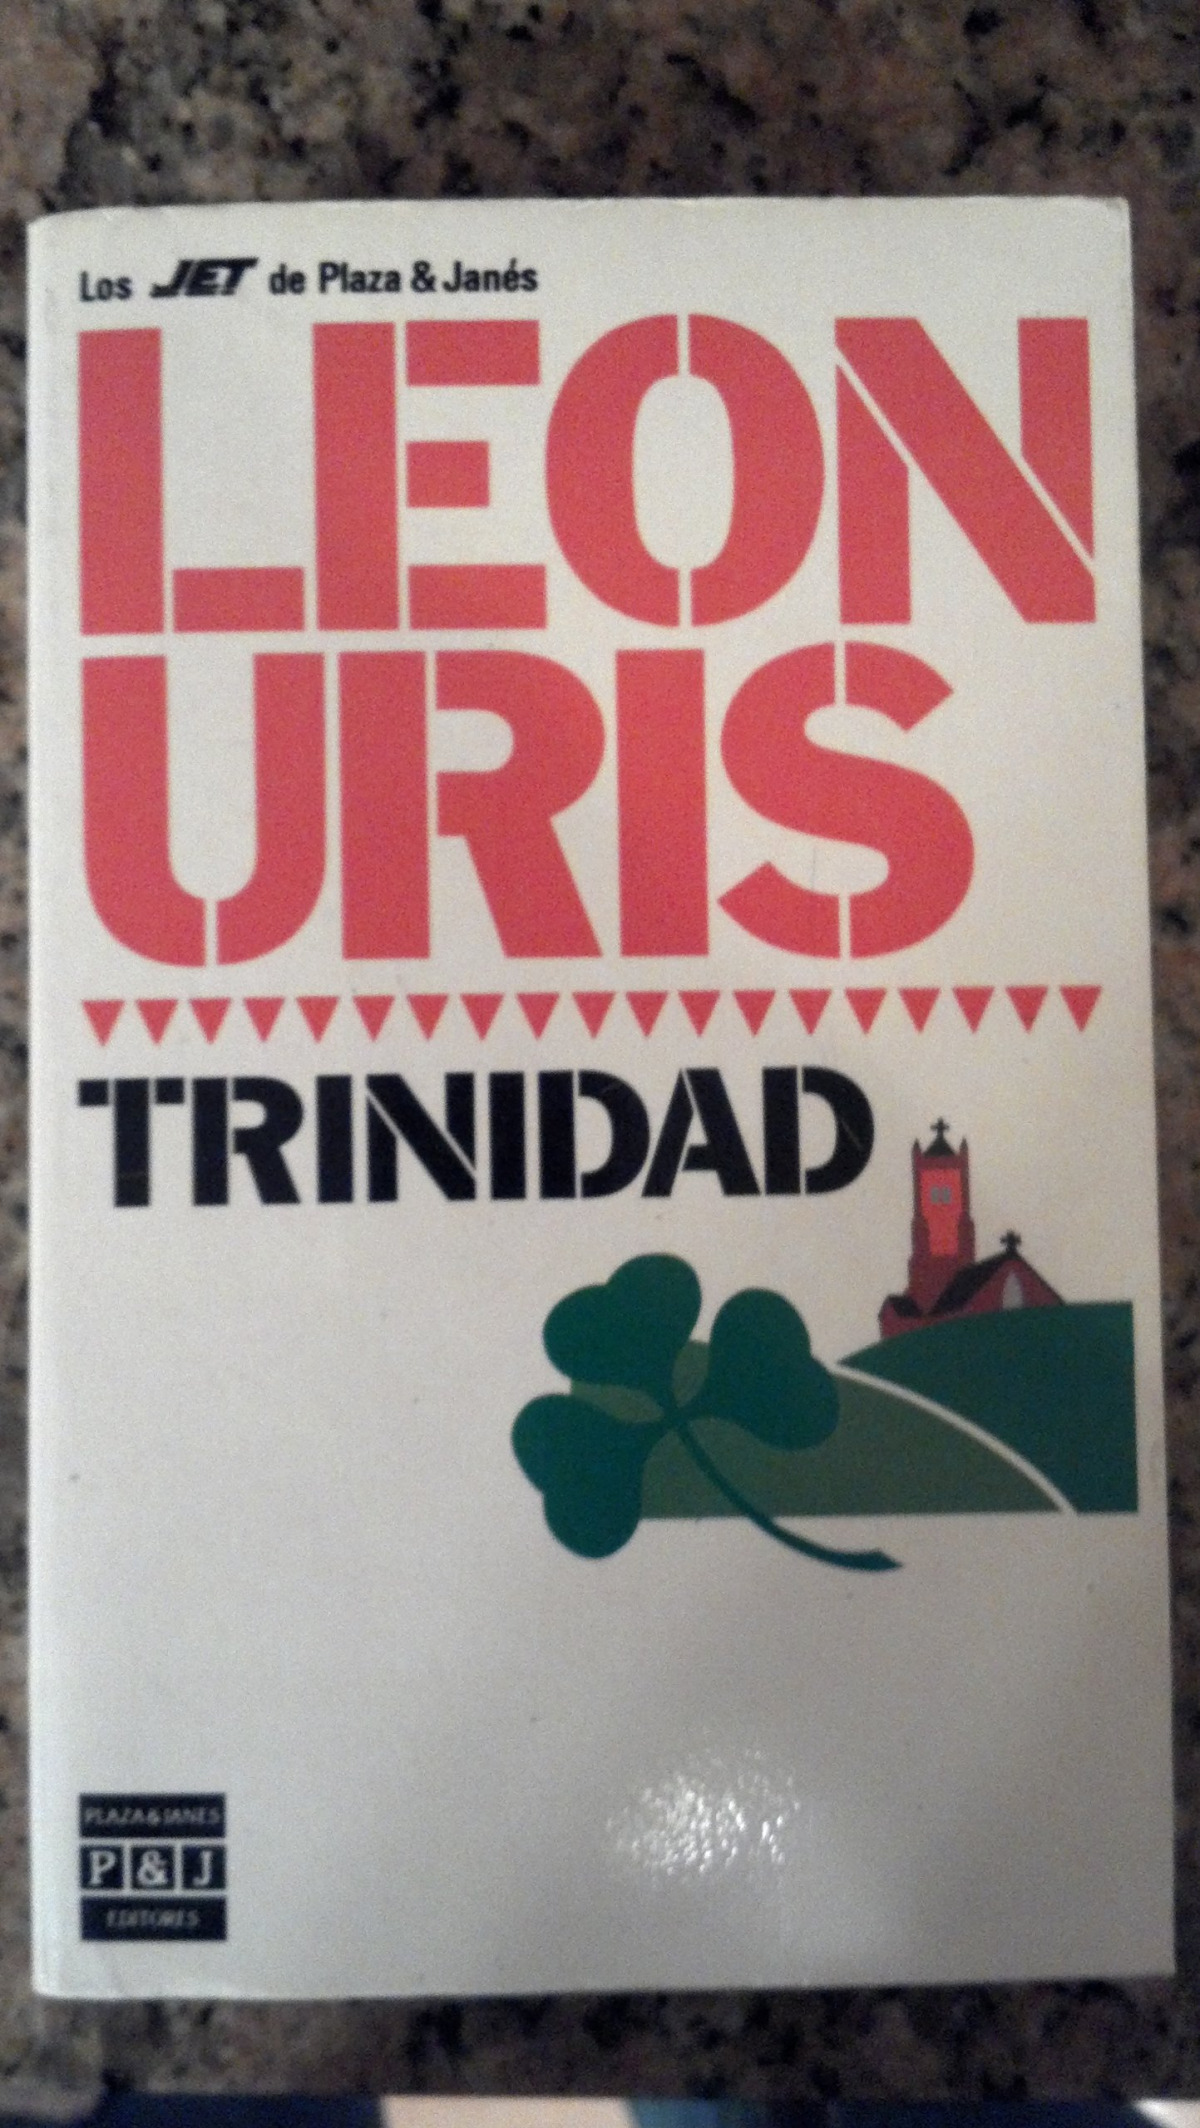 Trinidad - Uris, Leon Marcus